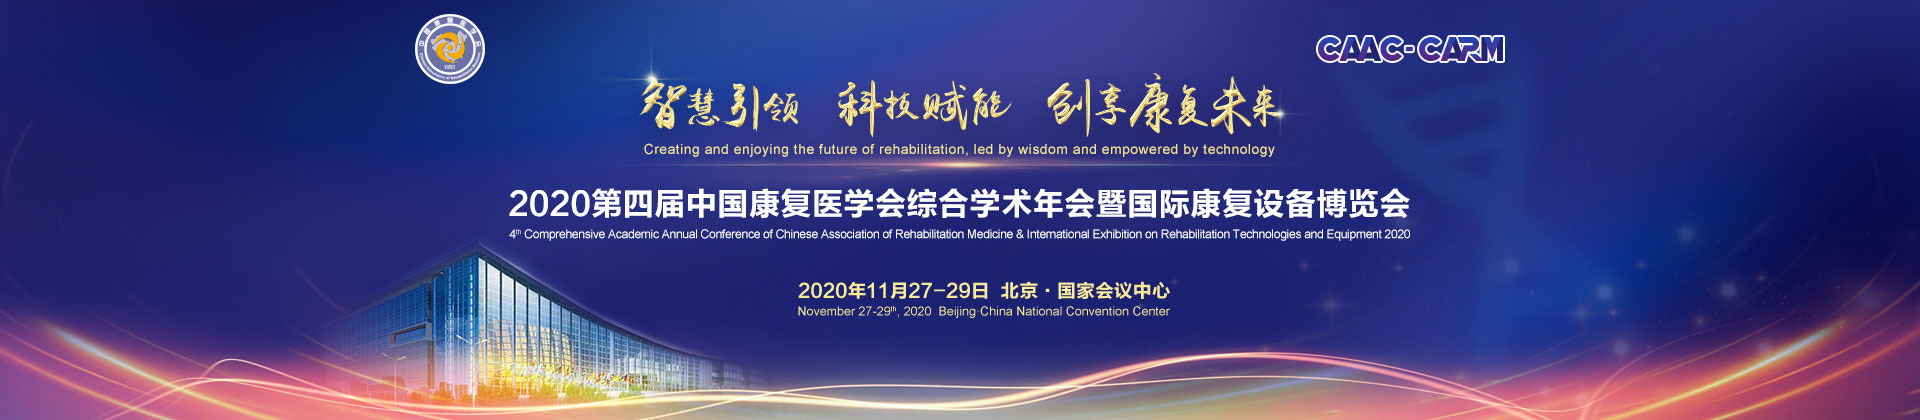 第四届中国康复医学会综合学术年会暨国际康复设备展览会